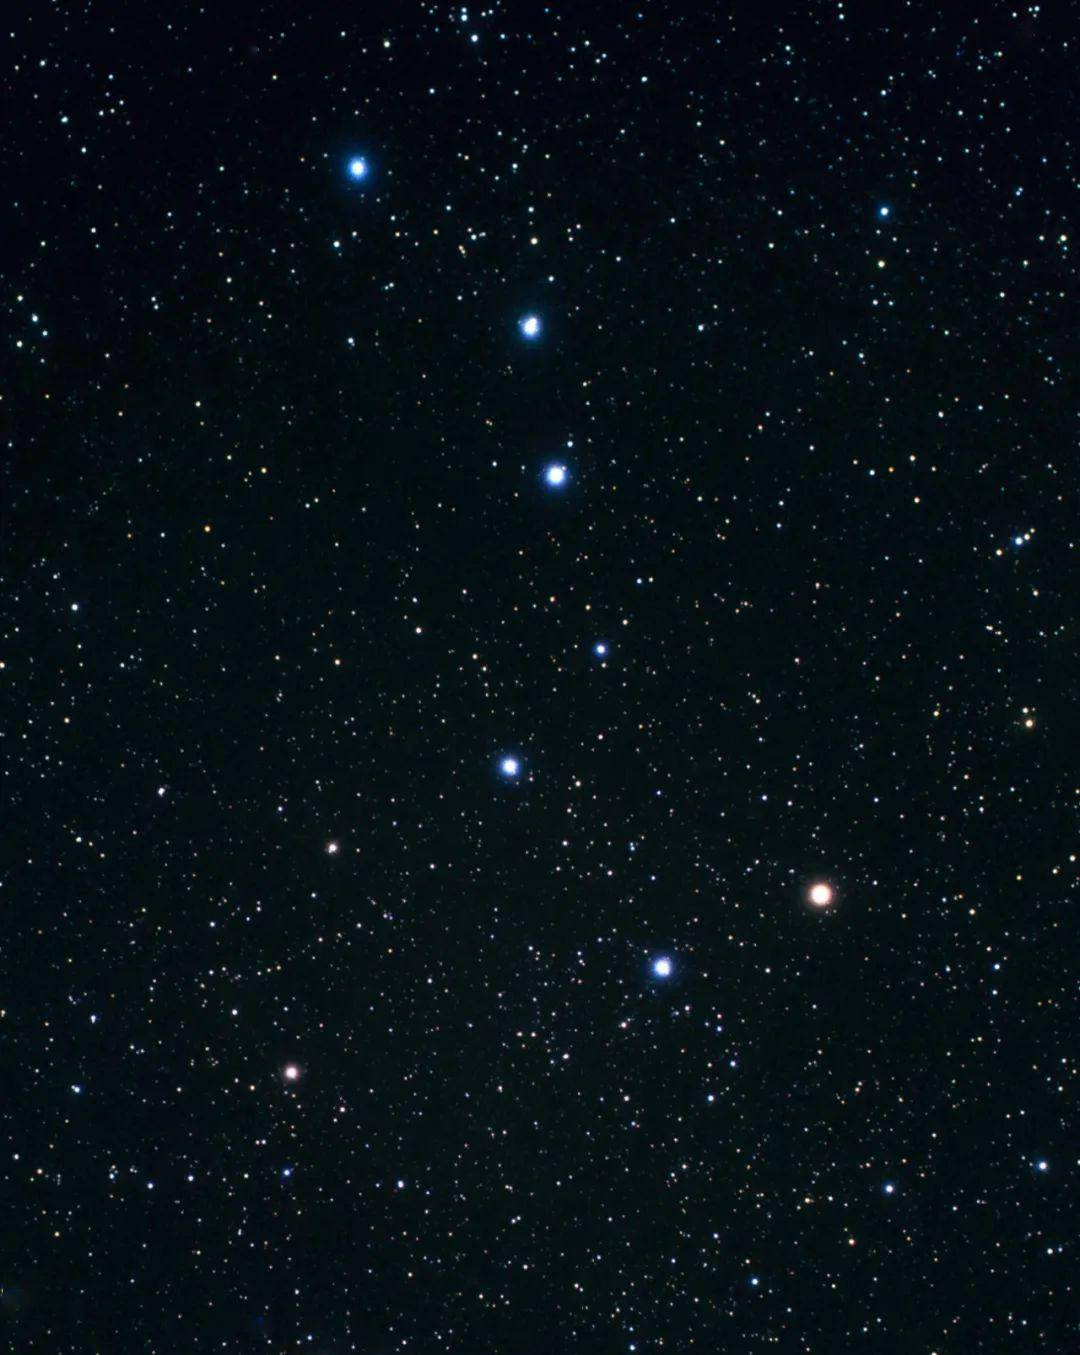 宇宙最不可思议的一张照片:从看似空无一物的空间,捕捉到数万亿恒星